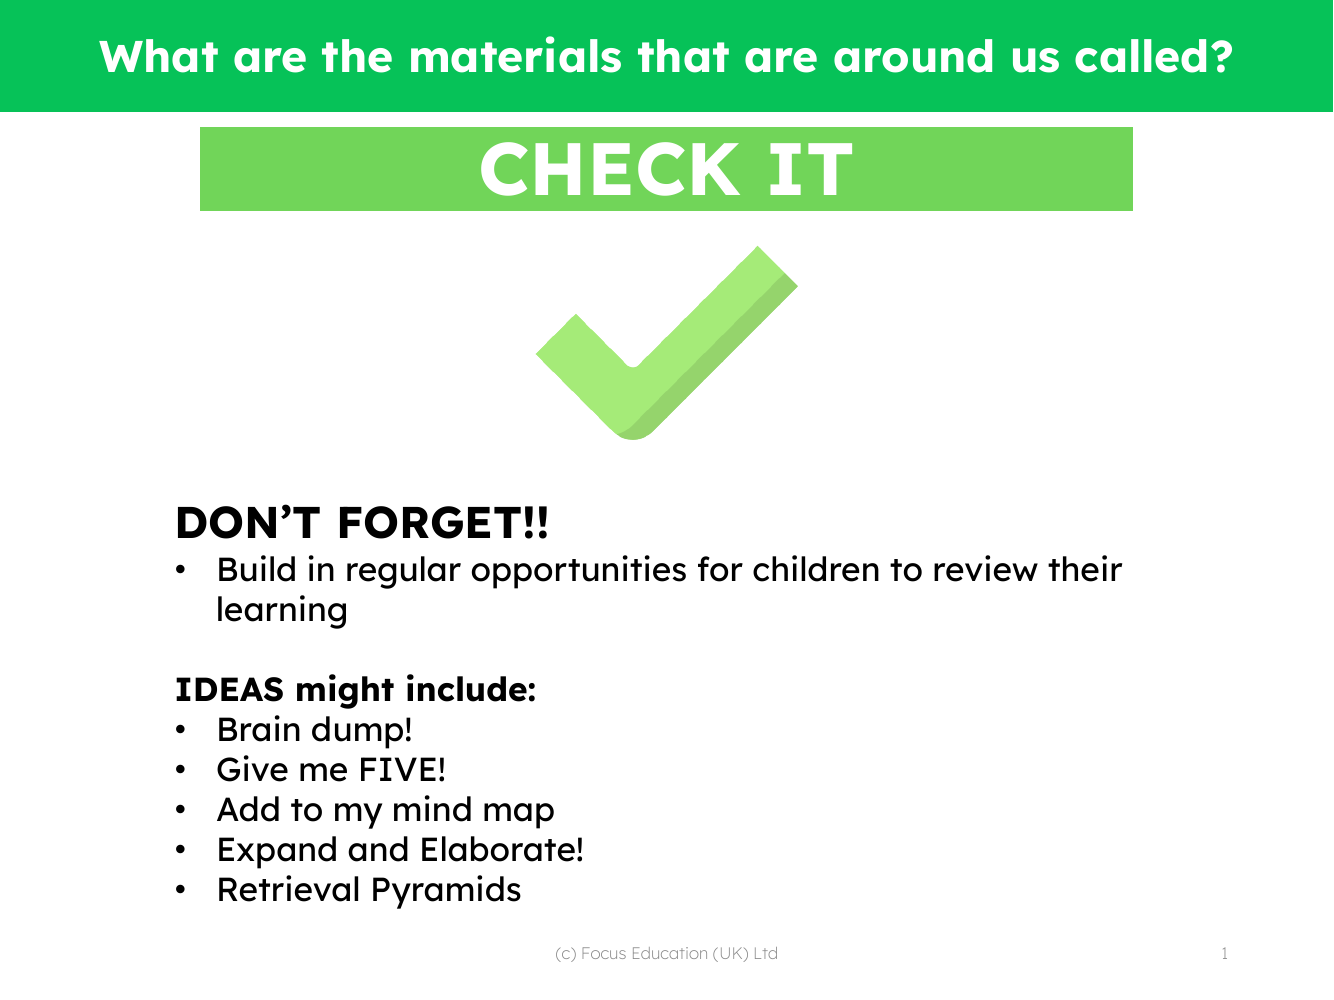 Check it! - Materials - Kindergarten